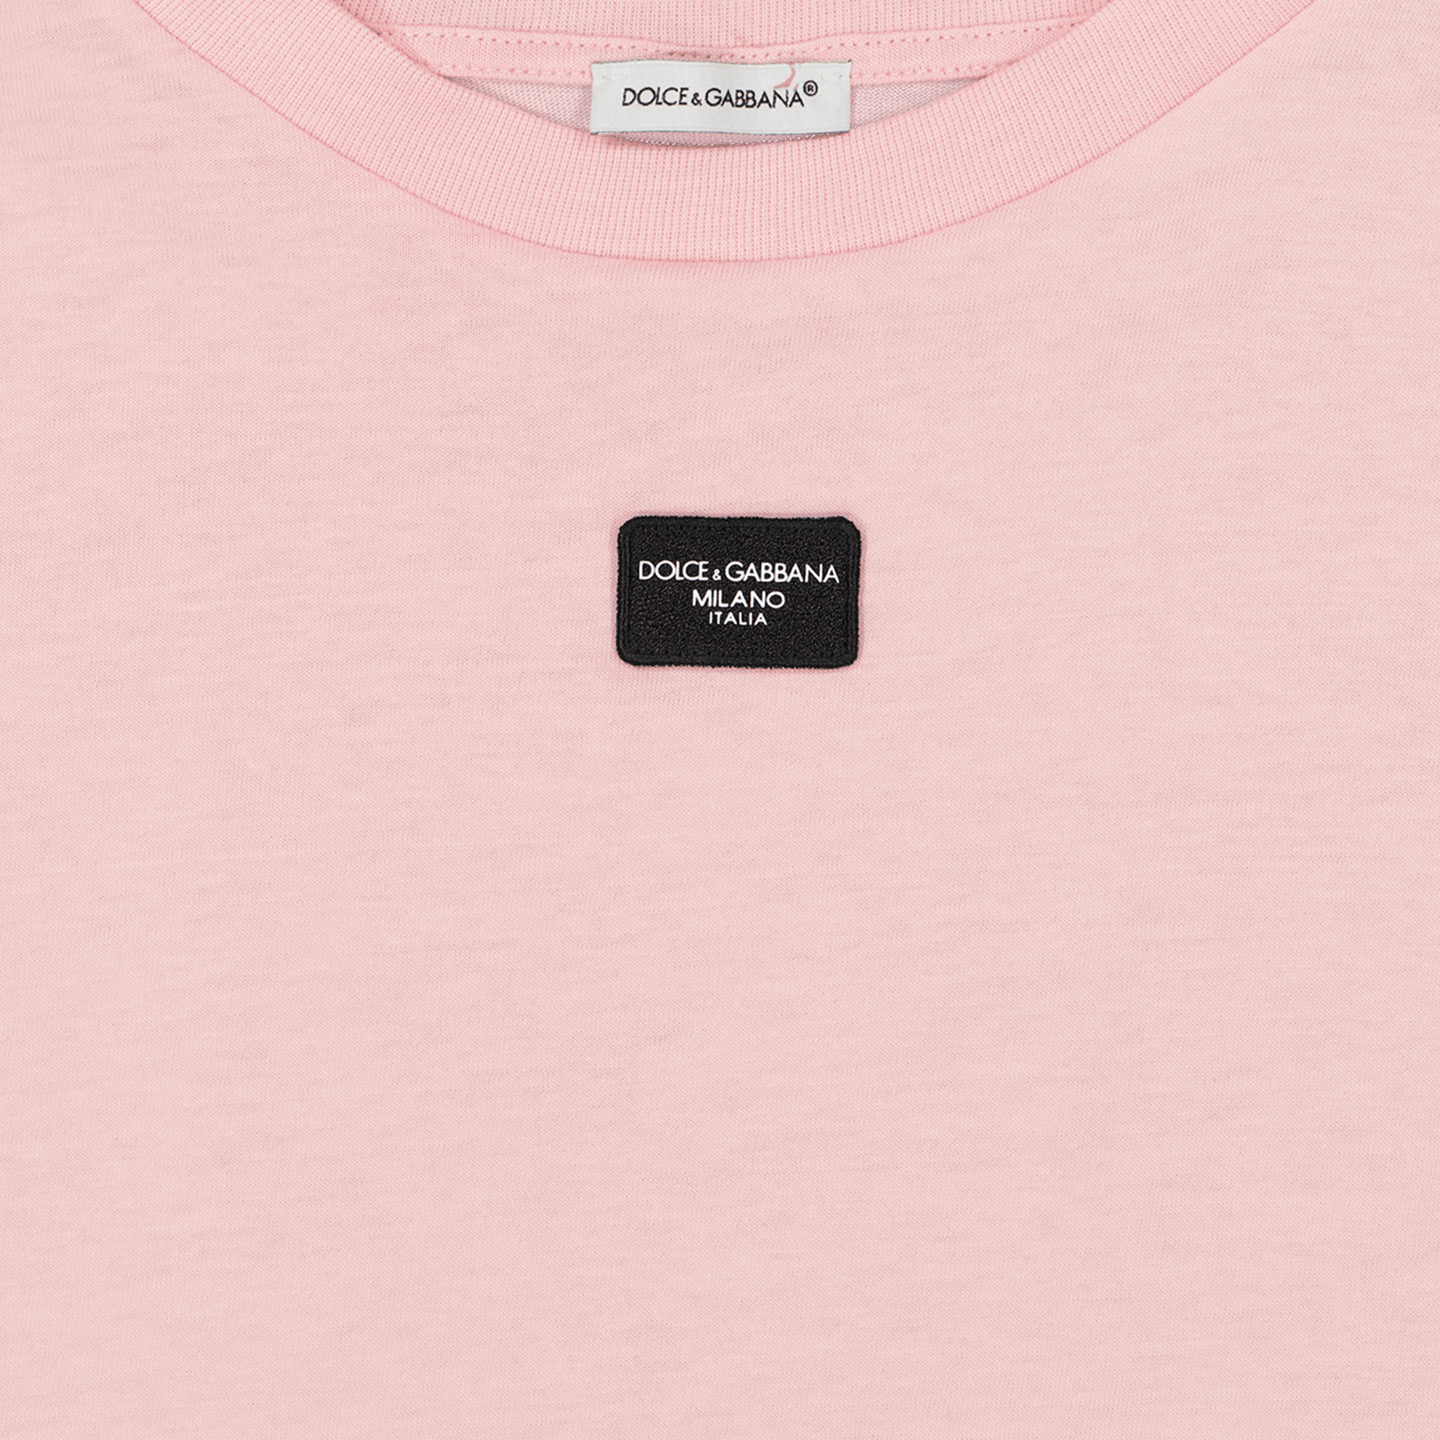 Dolce & Gabbana Kinder T-Shirt Licht Roze 3Y